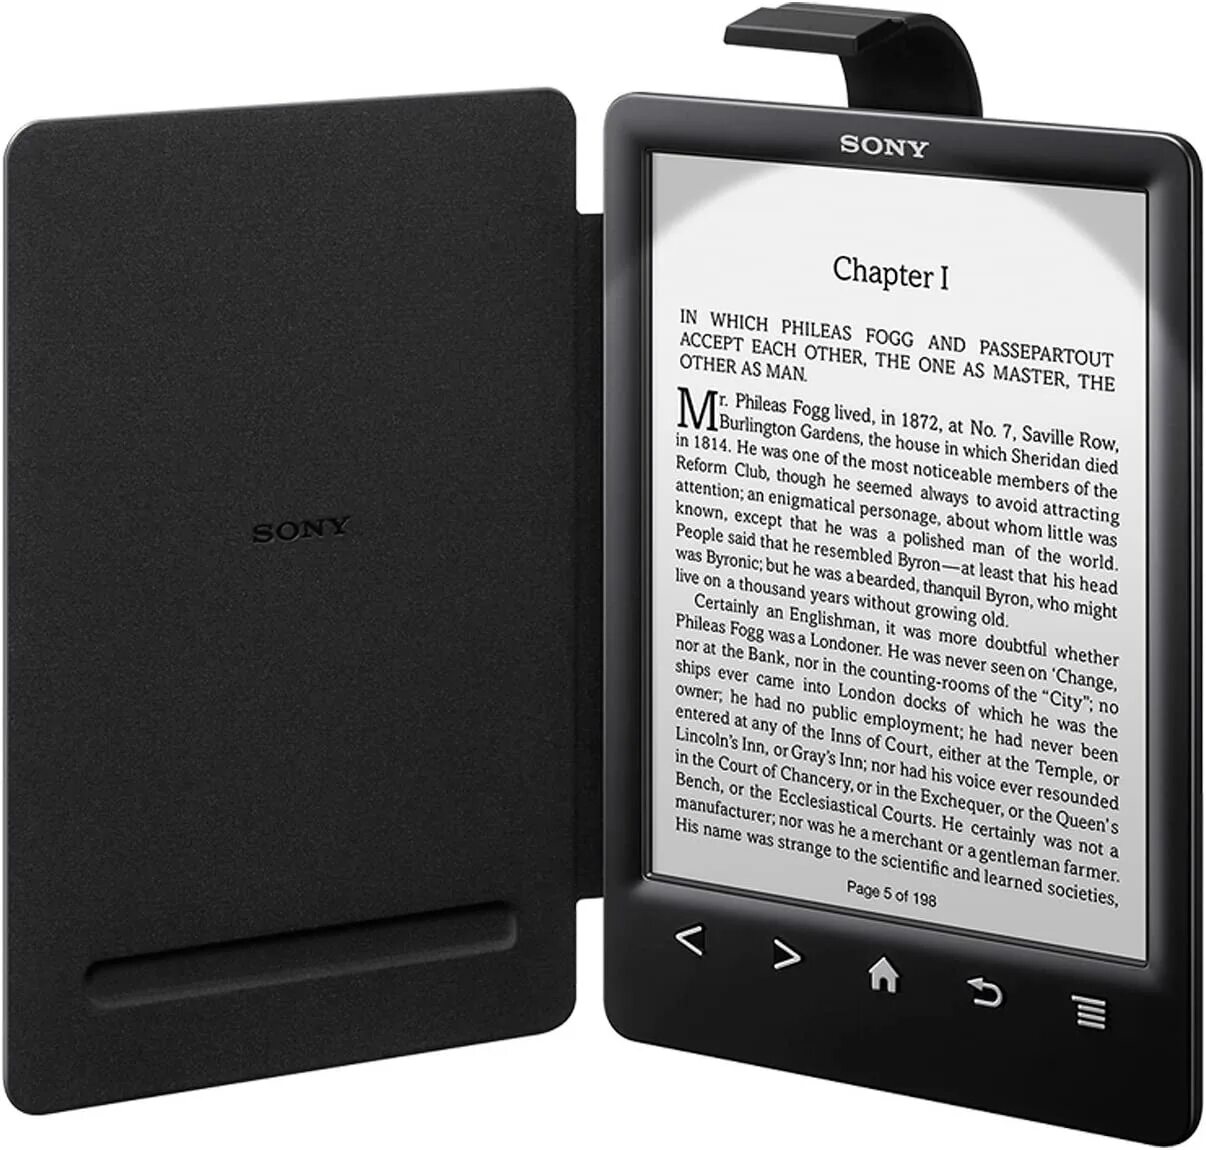 Электронная книга Sony Reader PRS-t3. Sony Reader PRS-t3 чехол. Электронная книга Sony PRS-t3 чехол. Подсветка для Sony Reader PRS t2. Электронный ридер купить